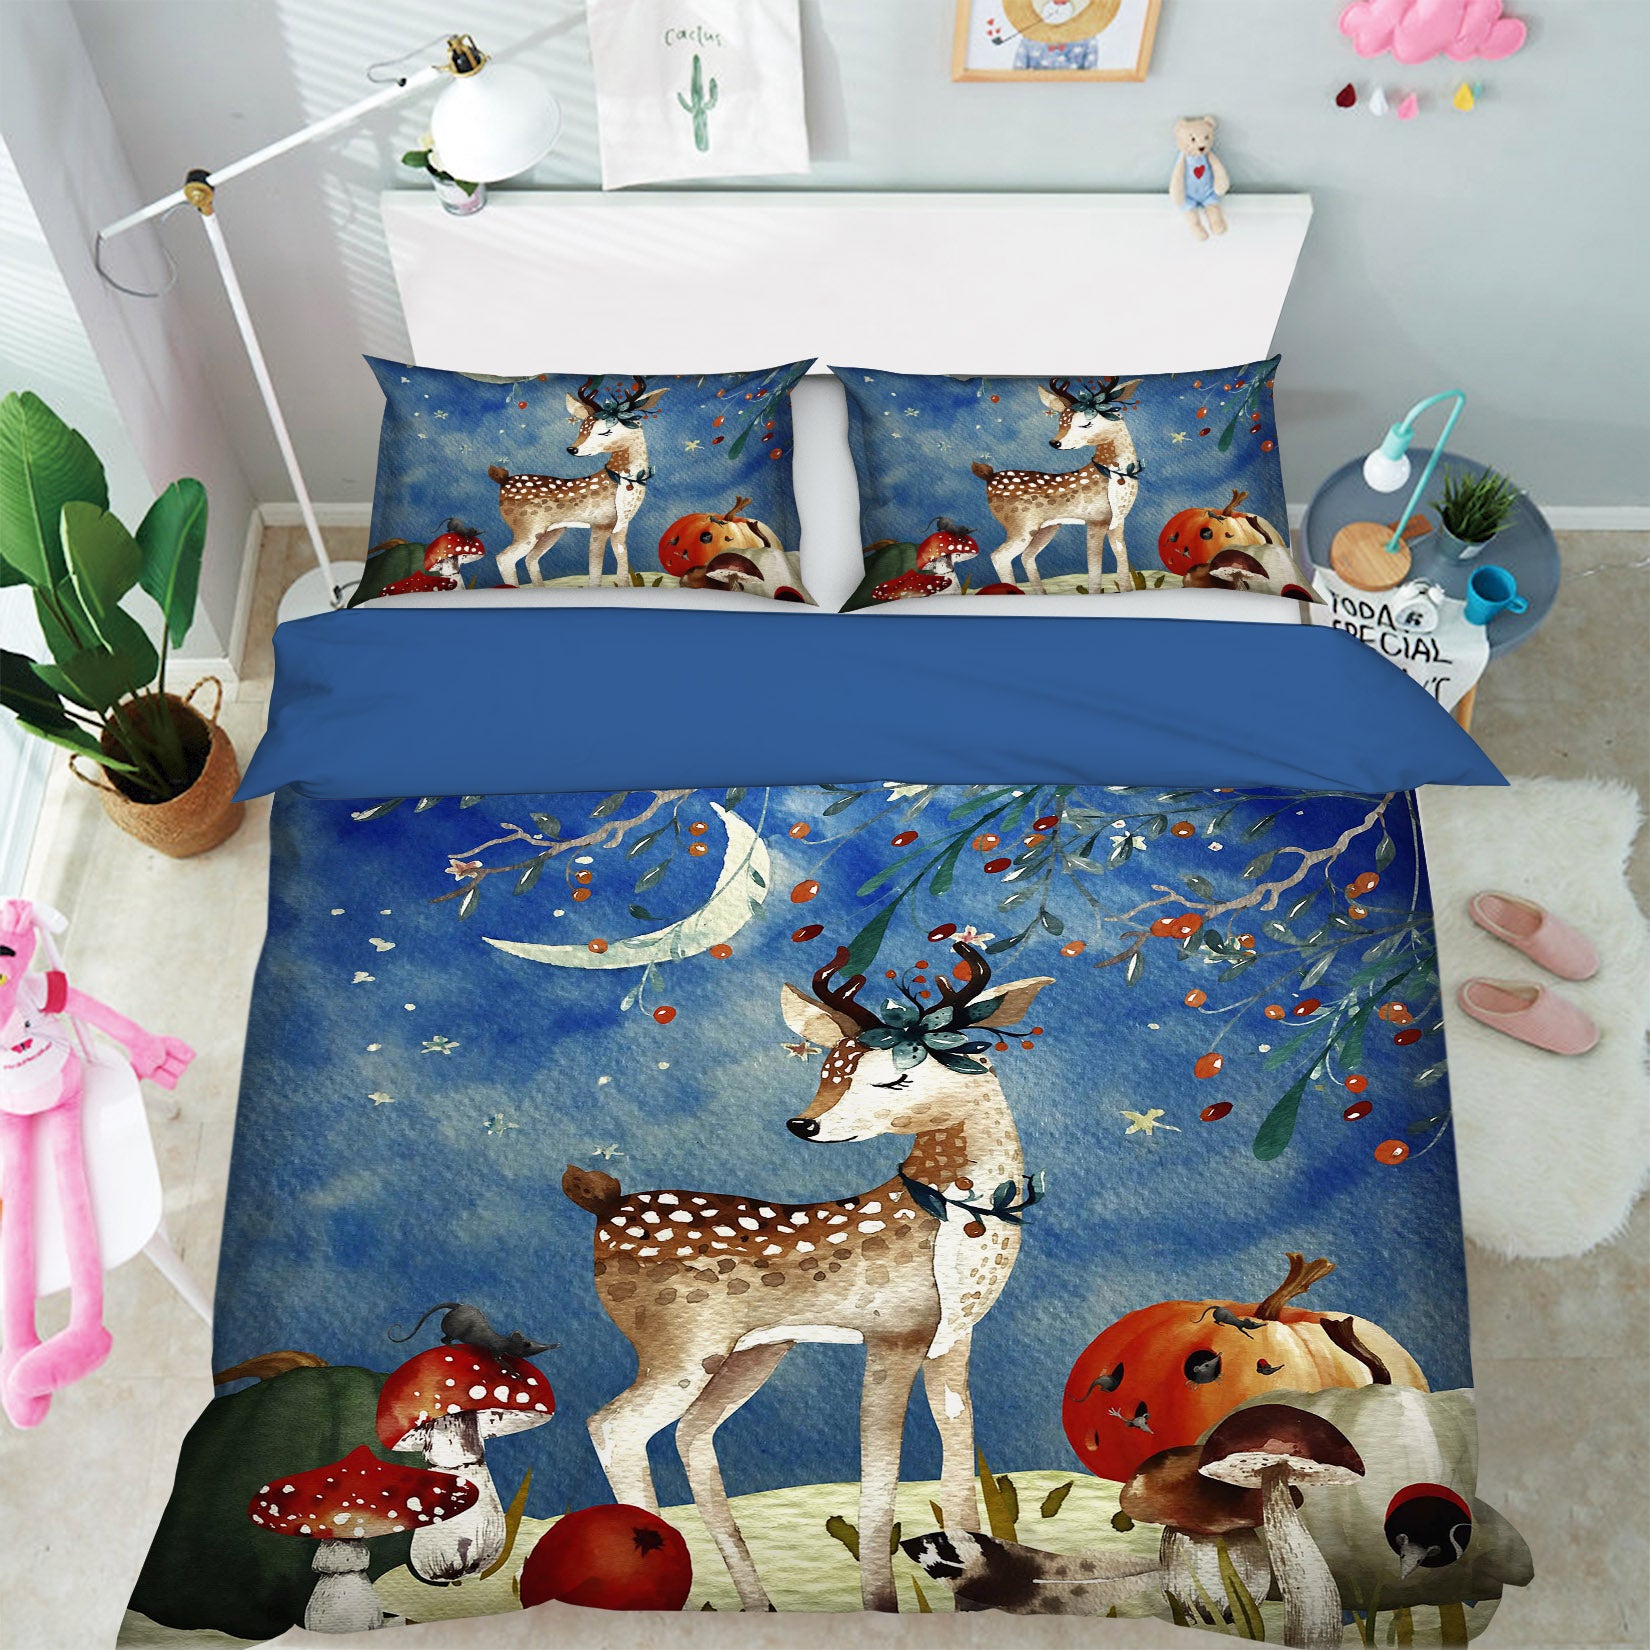 3D Sika Deer 18120  Uta Naumann Bedding Bed Pillowcases Quilt